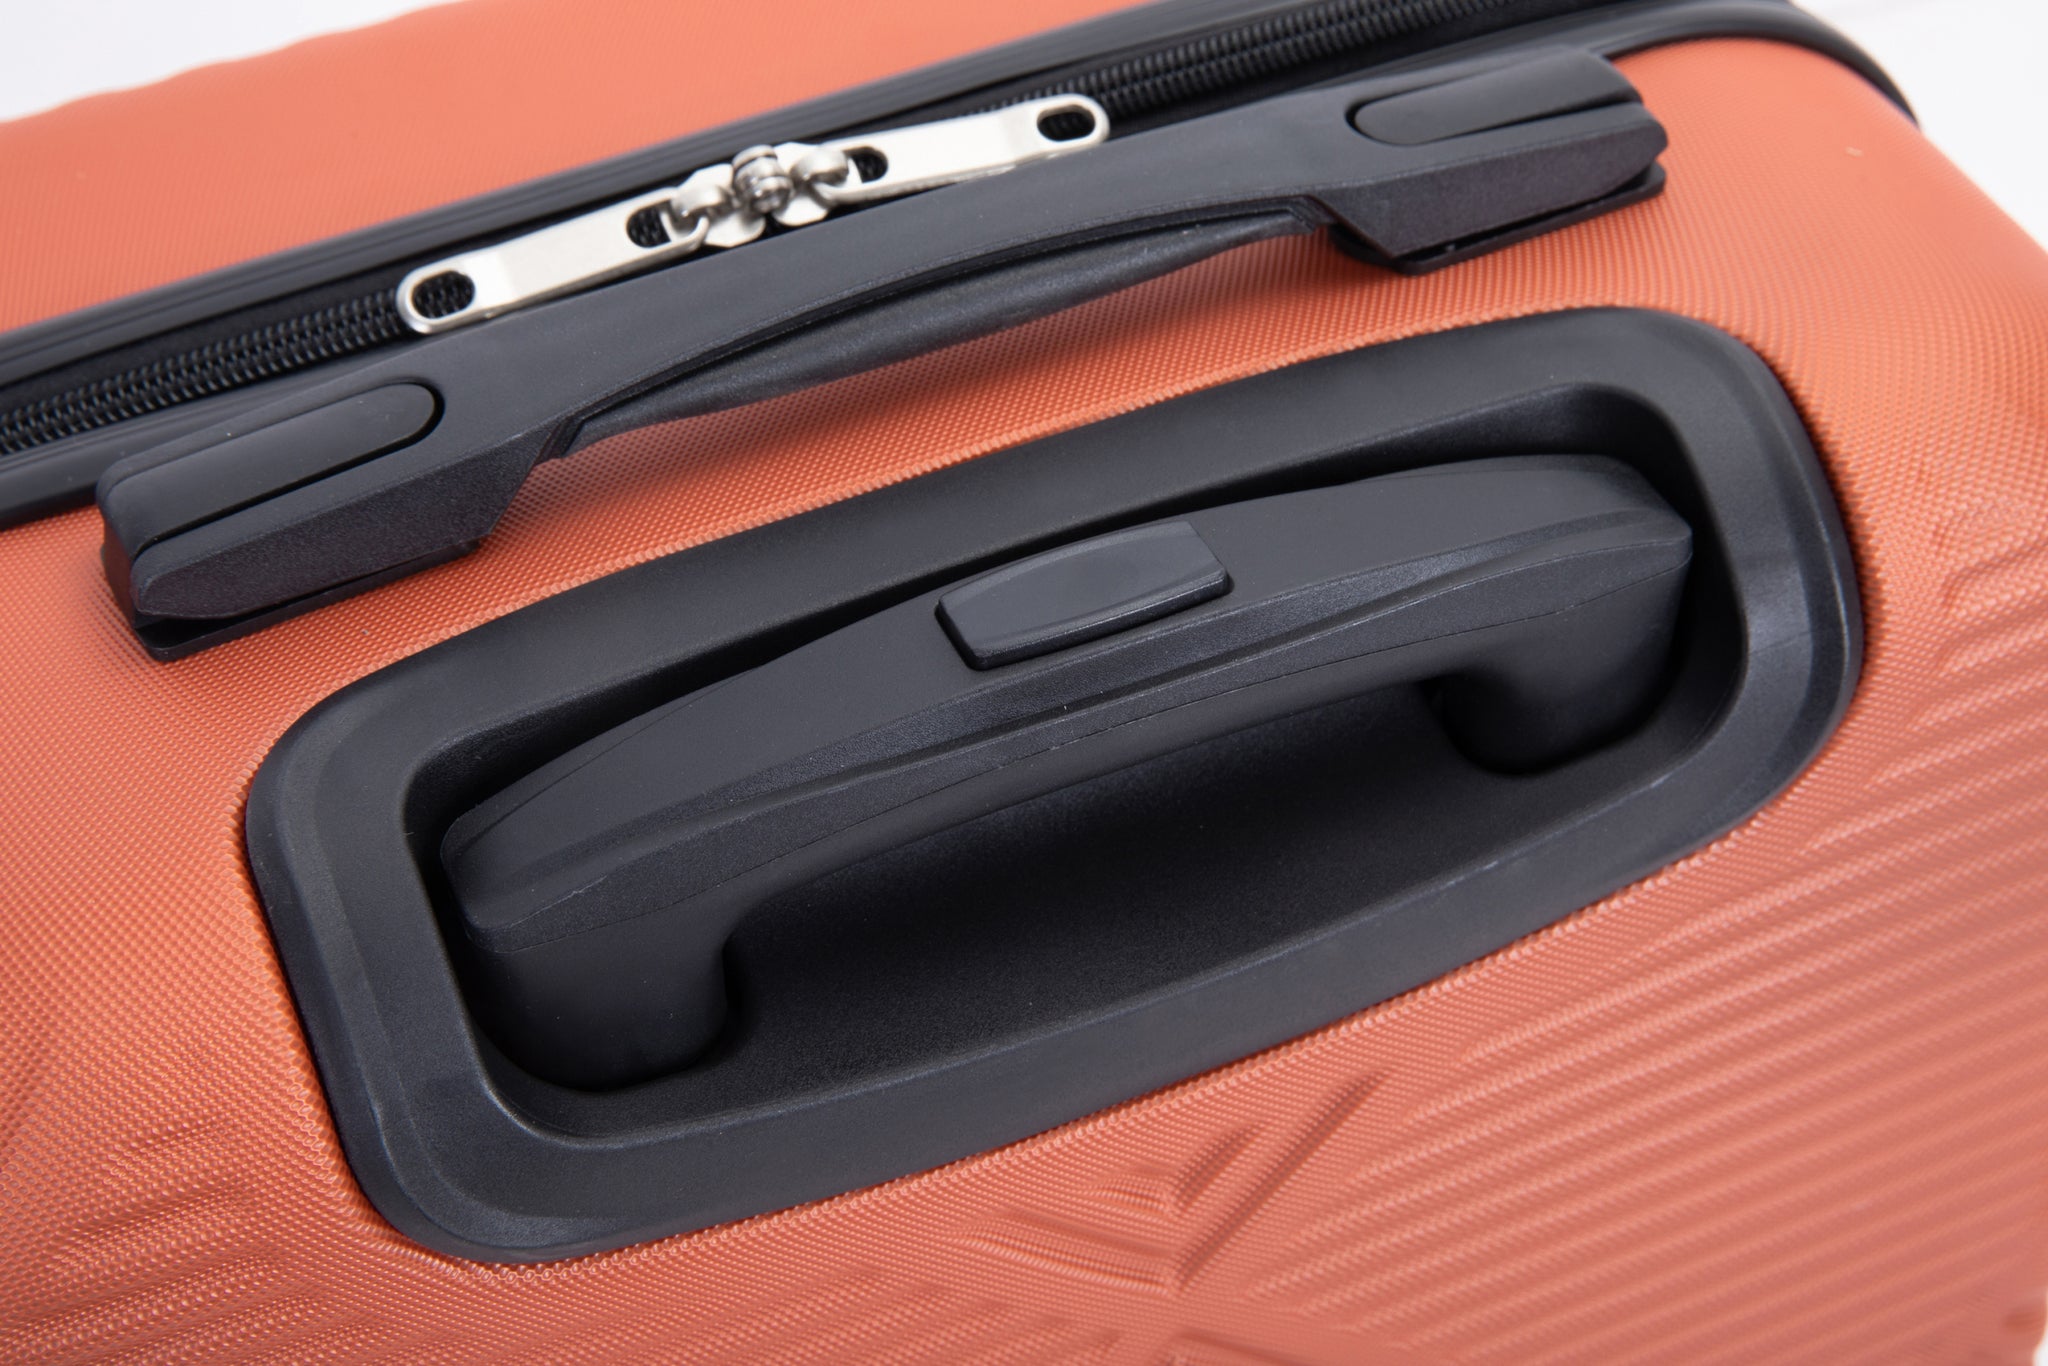 4 piece ABS lightweight suitcase, 14 inch makeup box dark orange-abs